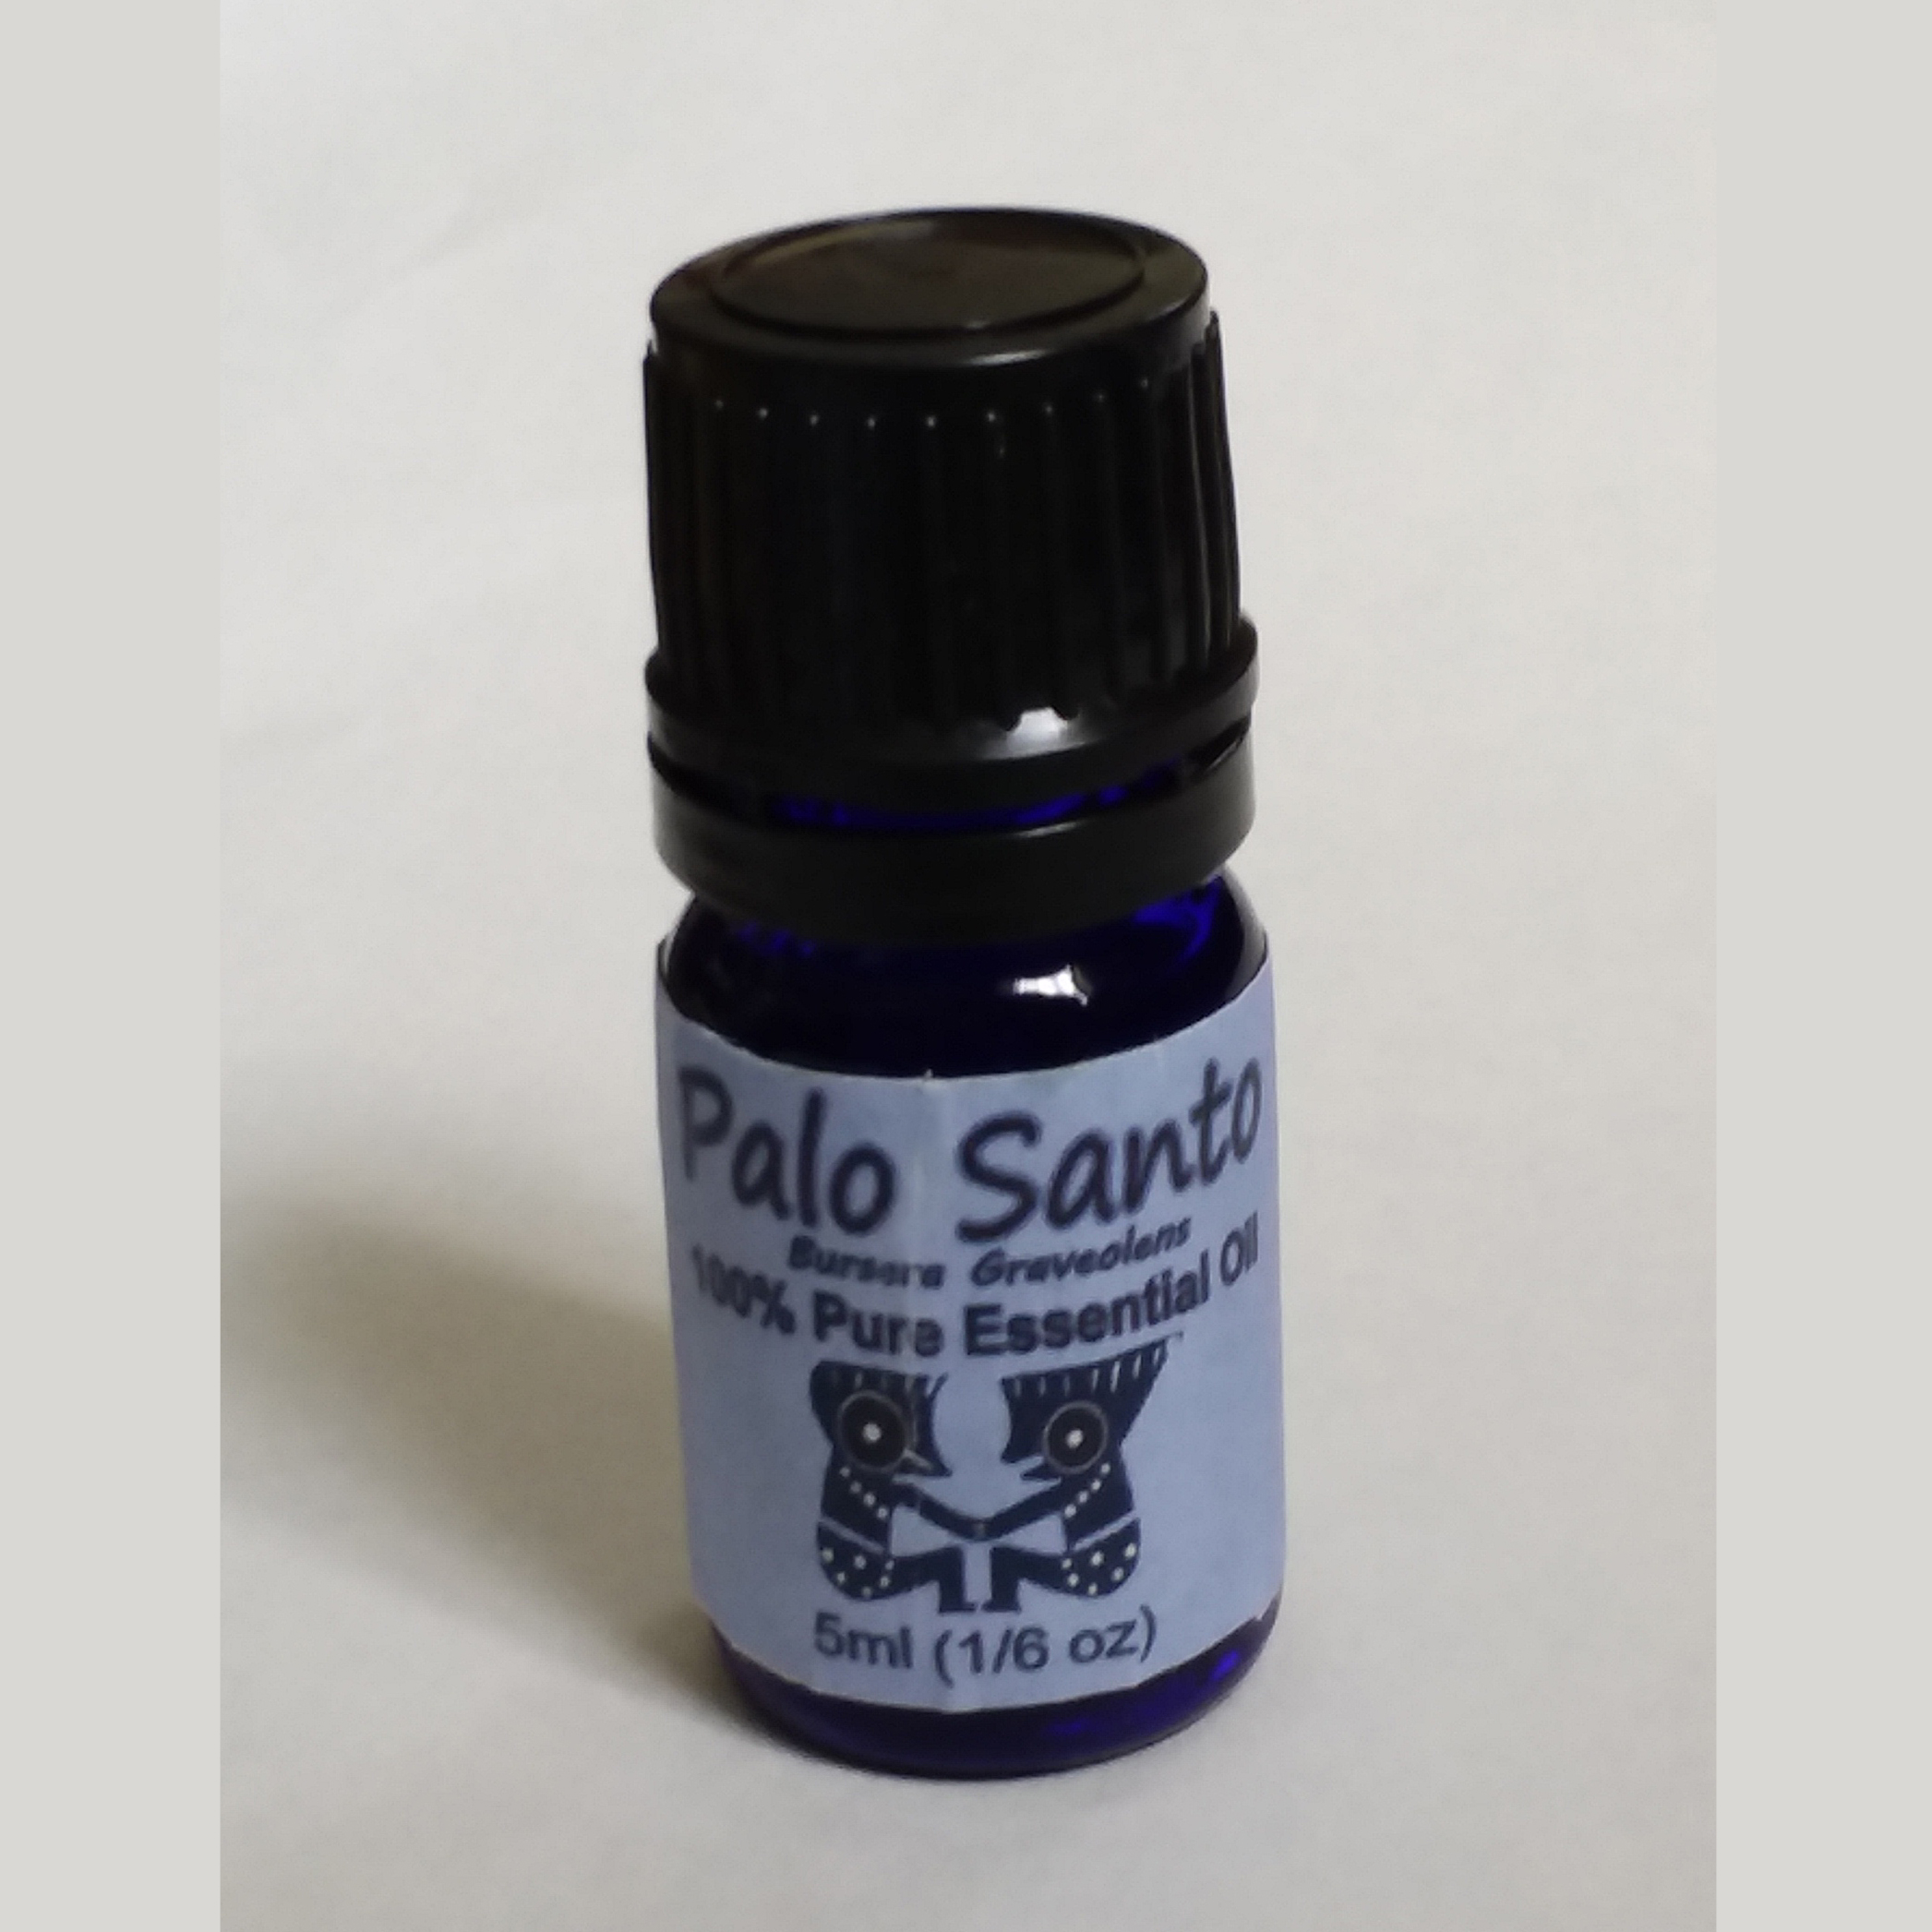 Palo Santo essential oil - pure